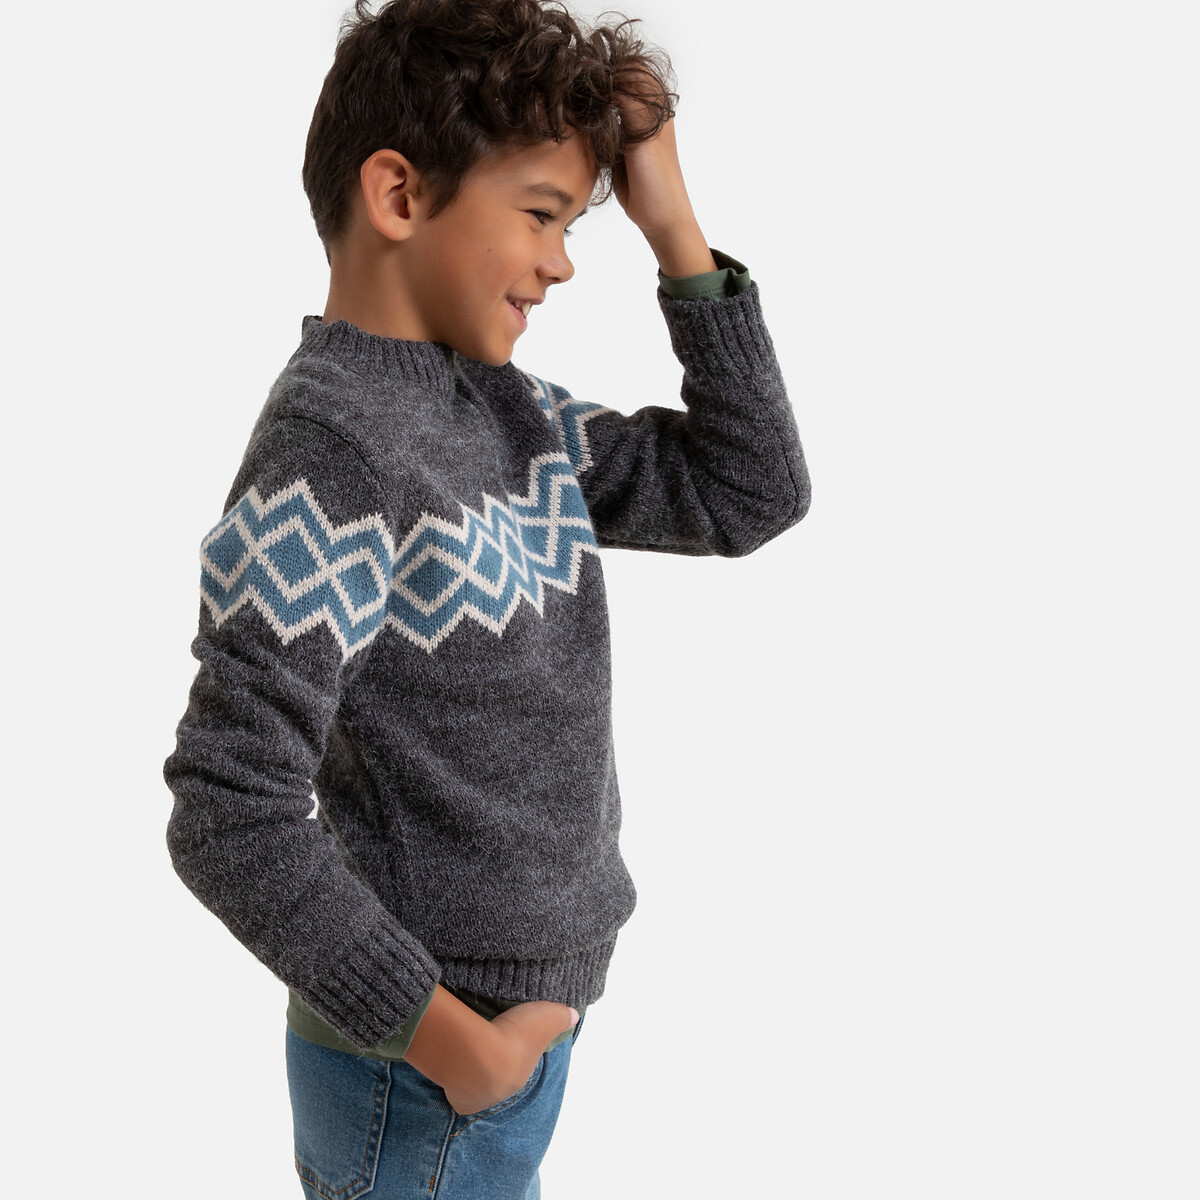 Пуловер La Redoute С воротником-стойкой из плотного трикотажа 3-12 лет 6 лет - 114 см серый, размер 6 лет - 114 см